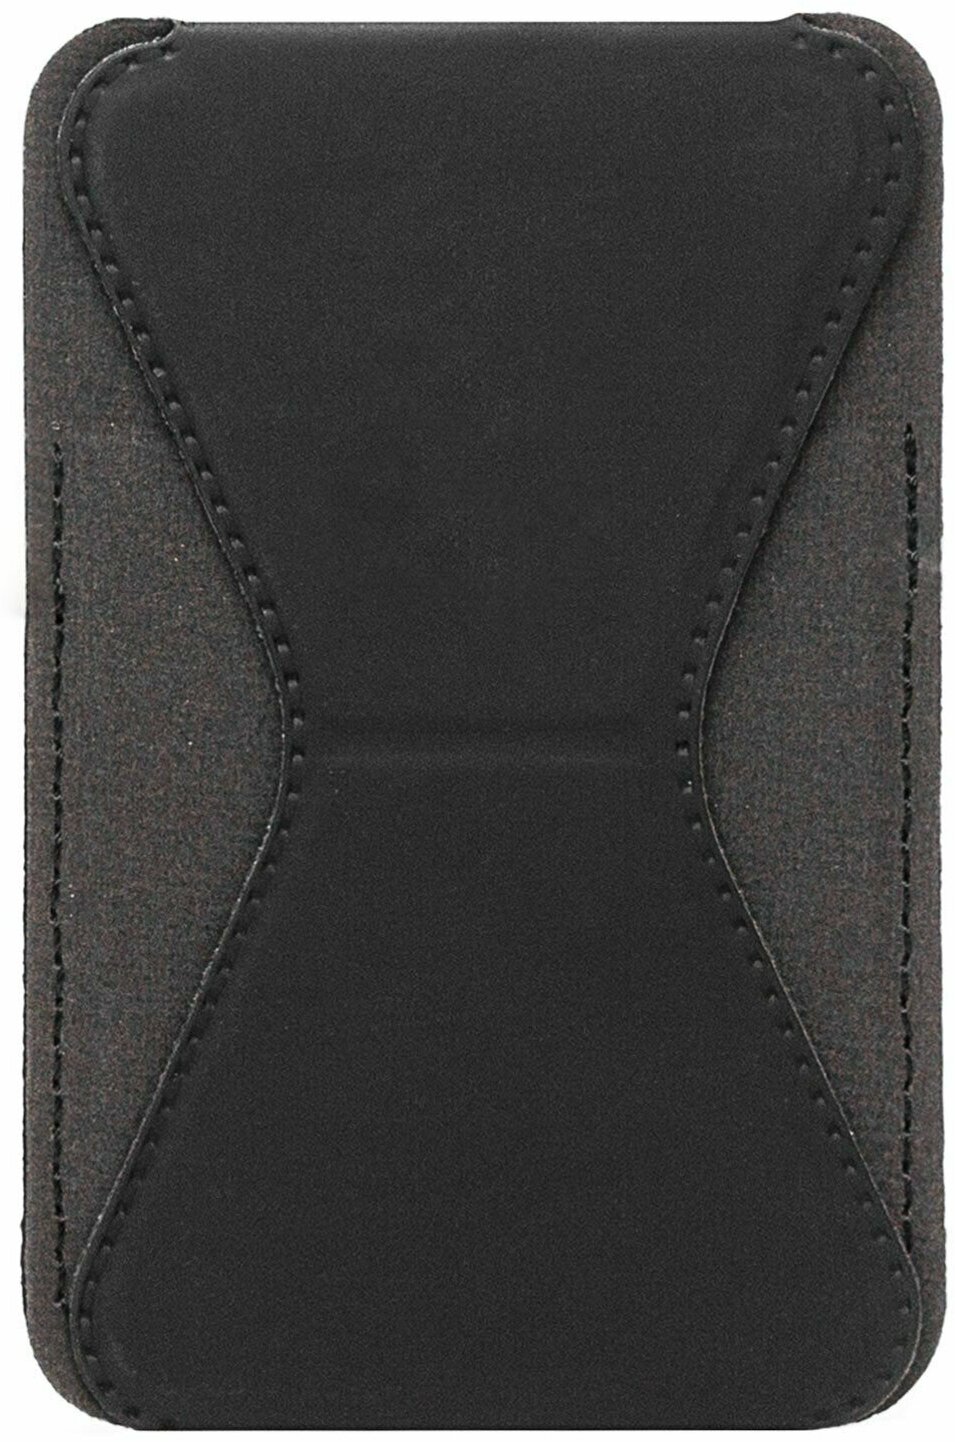 Картхолдер на телефон из искусственной кожи с подставкой / крепление на 3М скотч / кармашек для карточек пропусков проездных черный